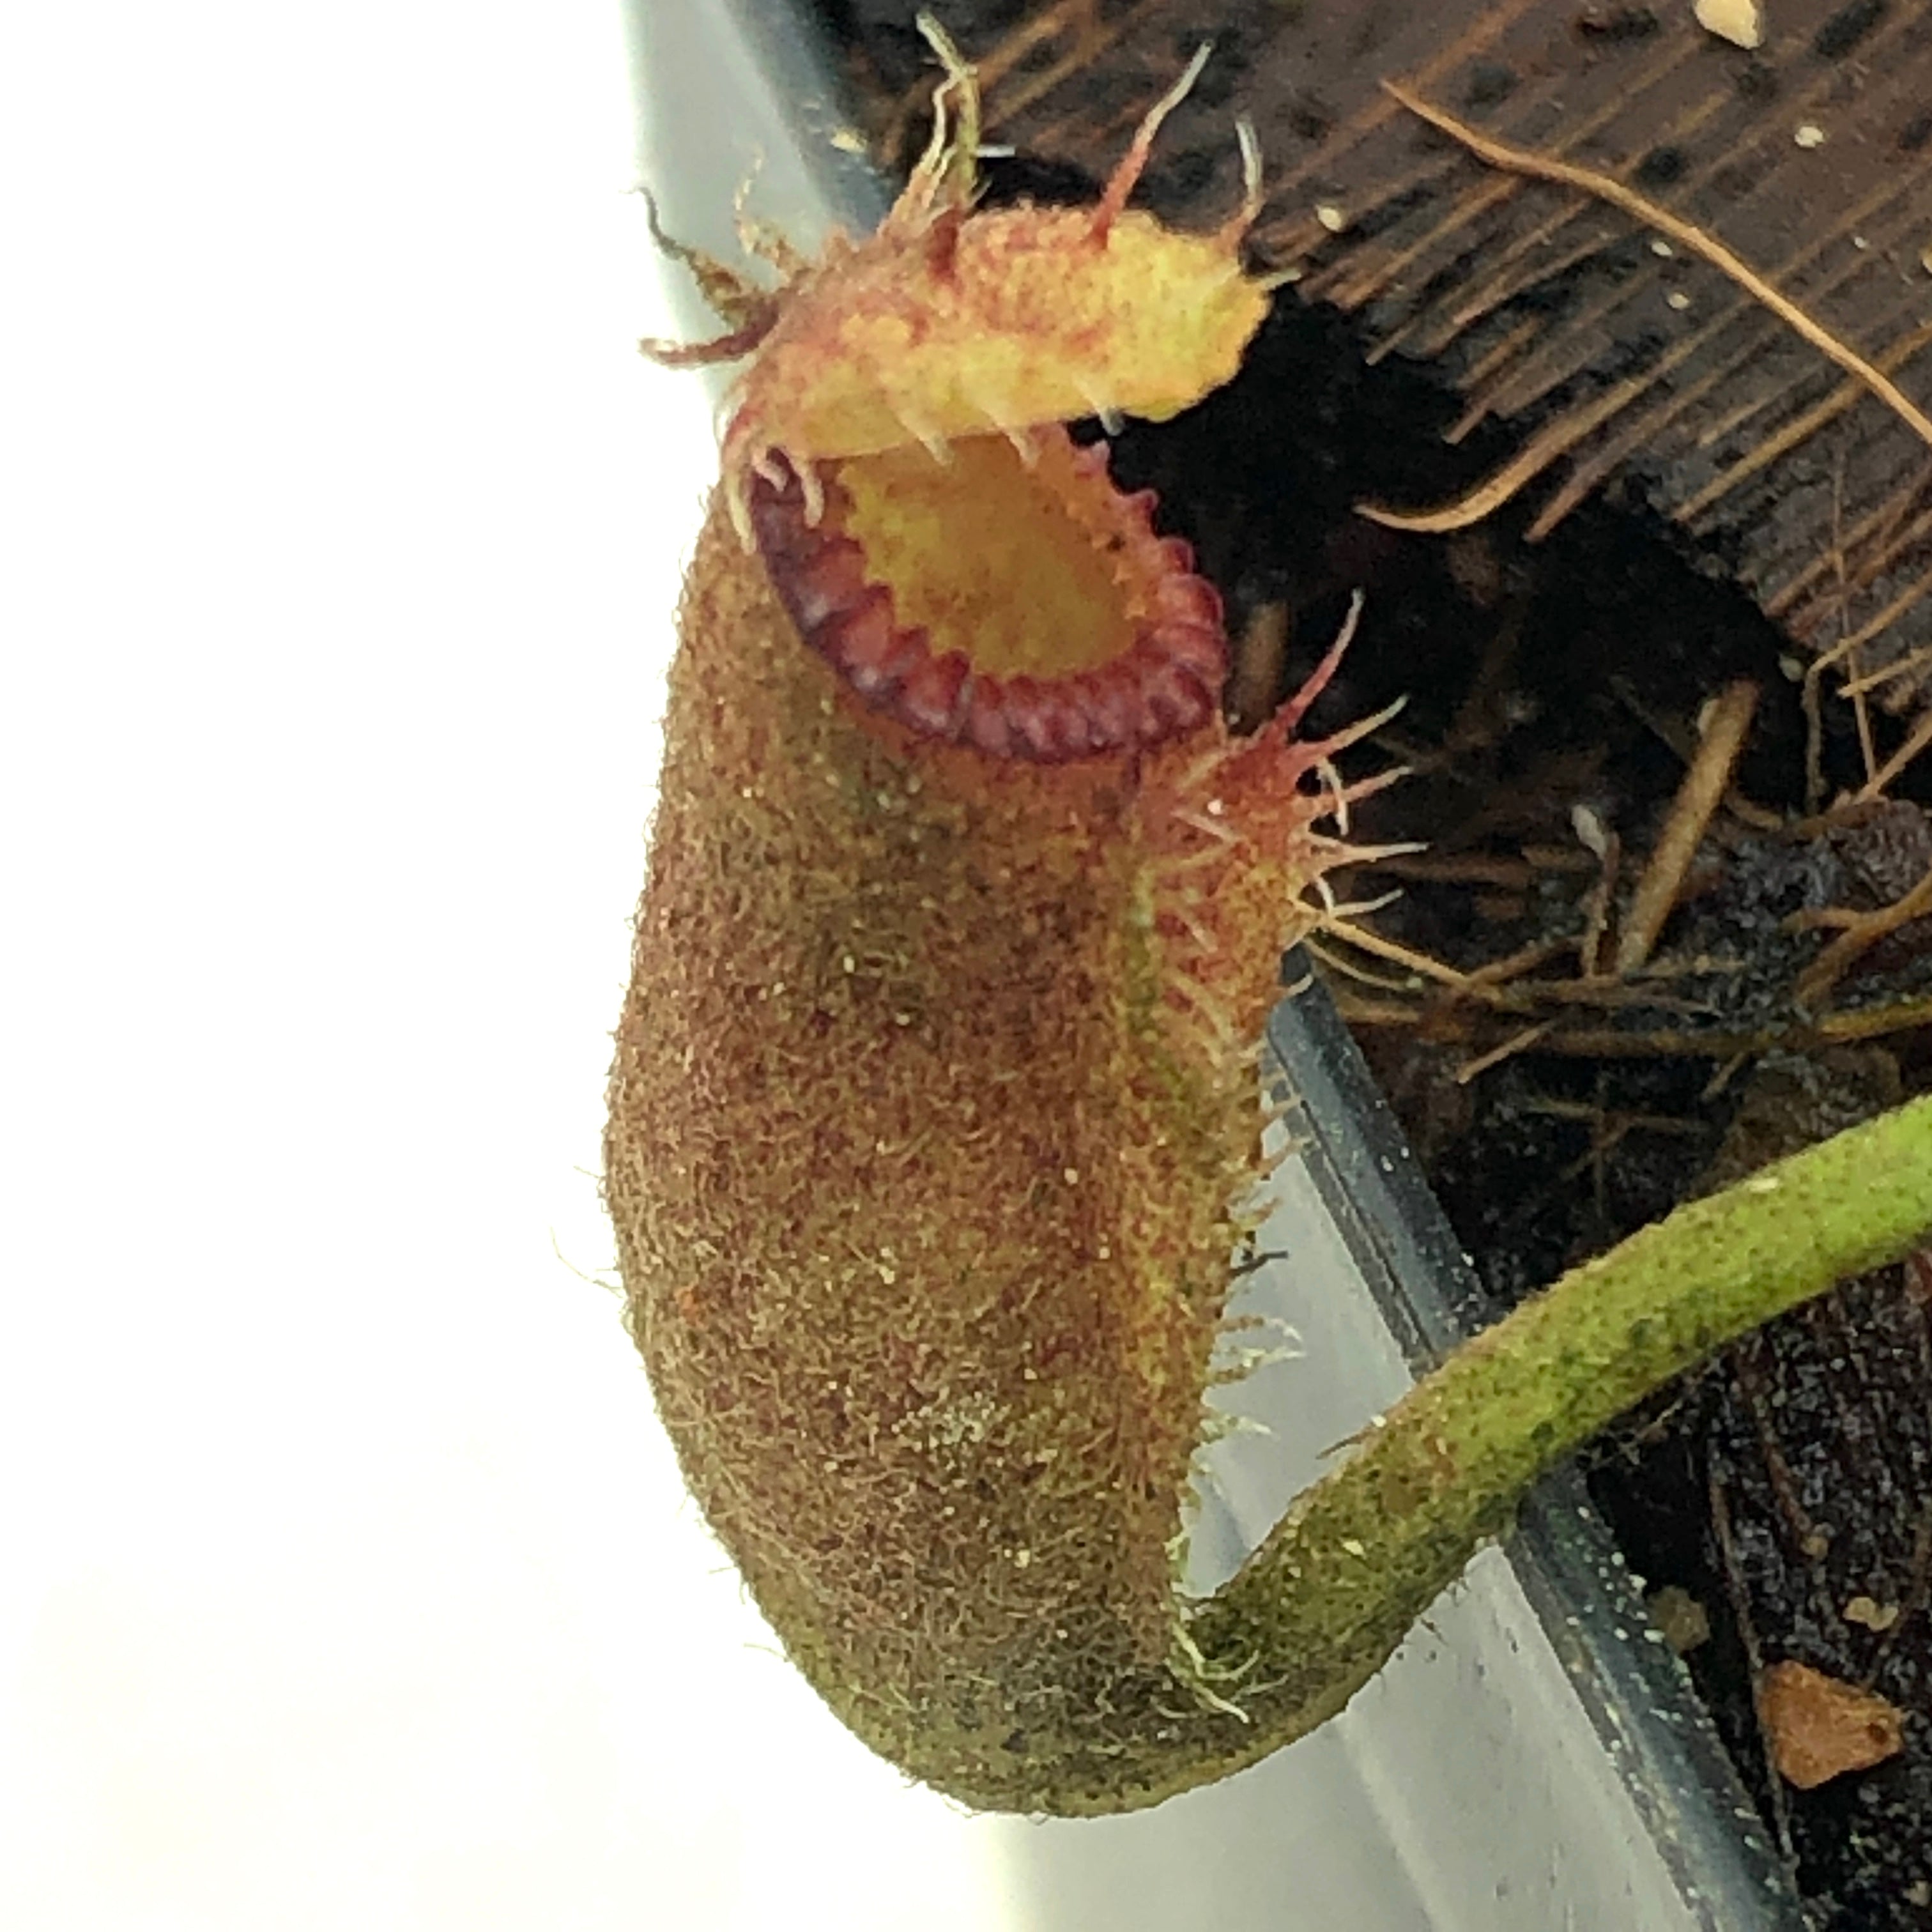 Nepenthes hamata x edwardsiana Wistuba Clone 9